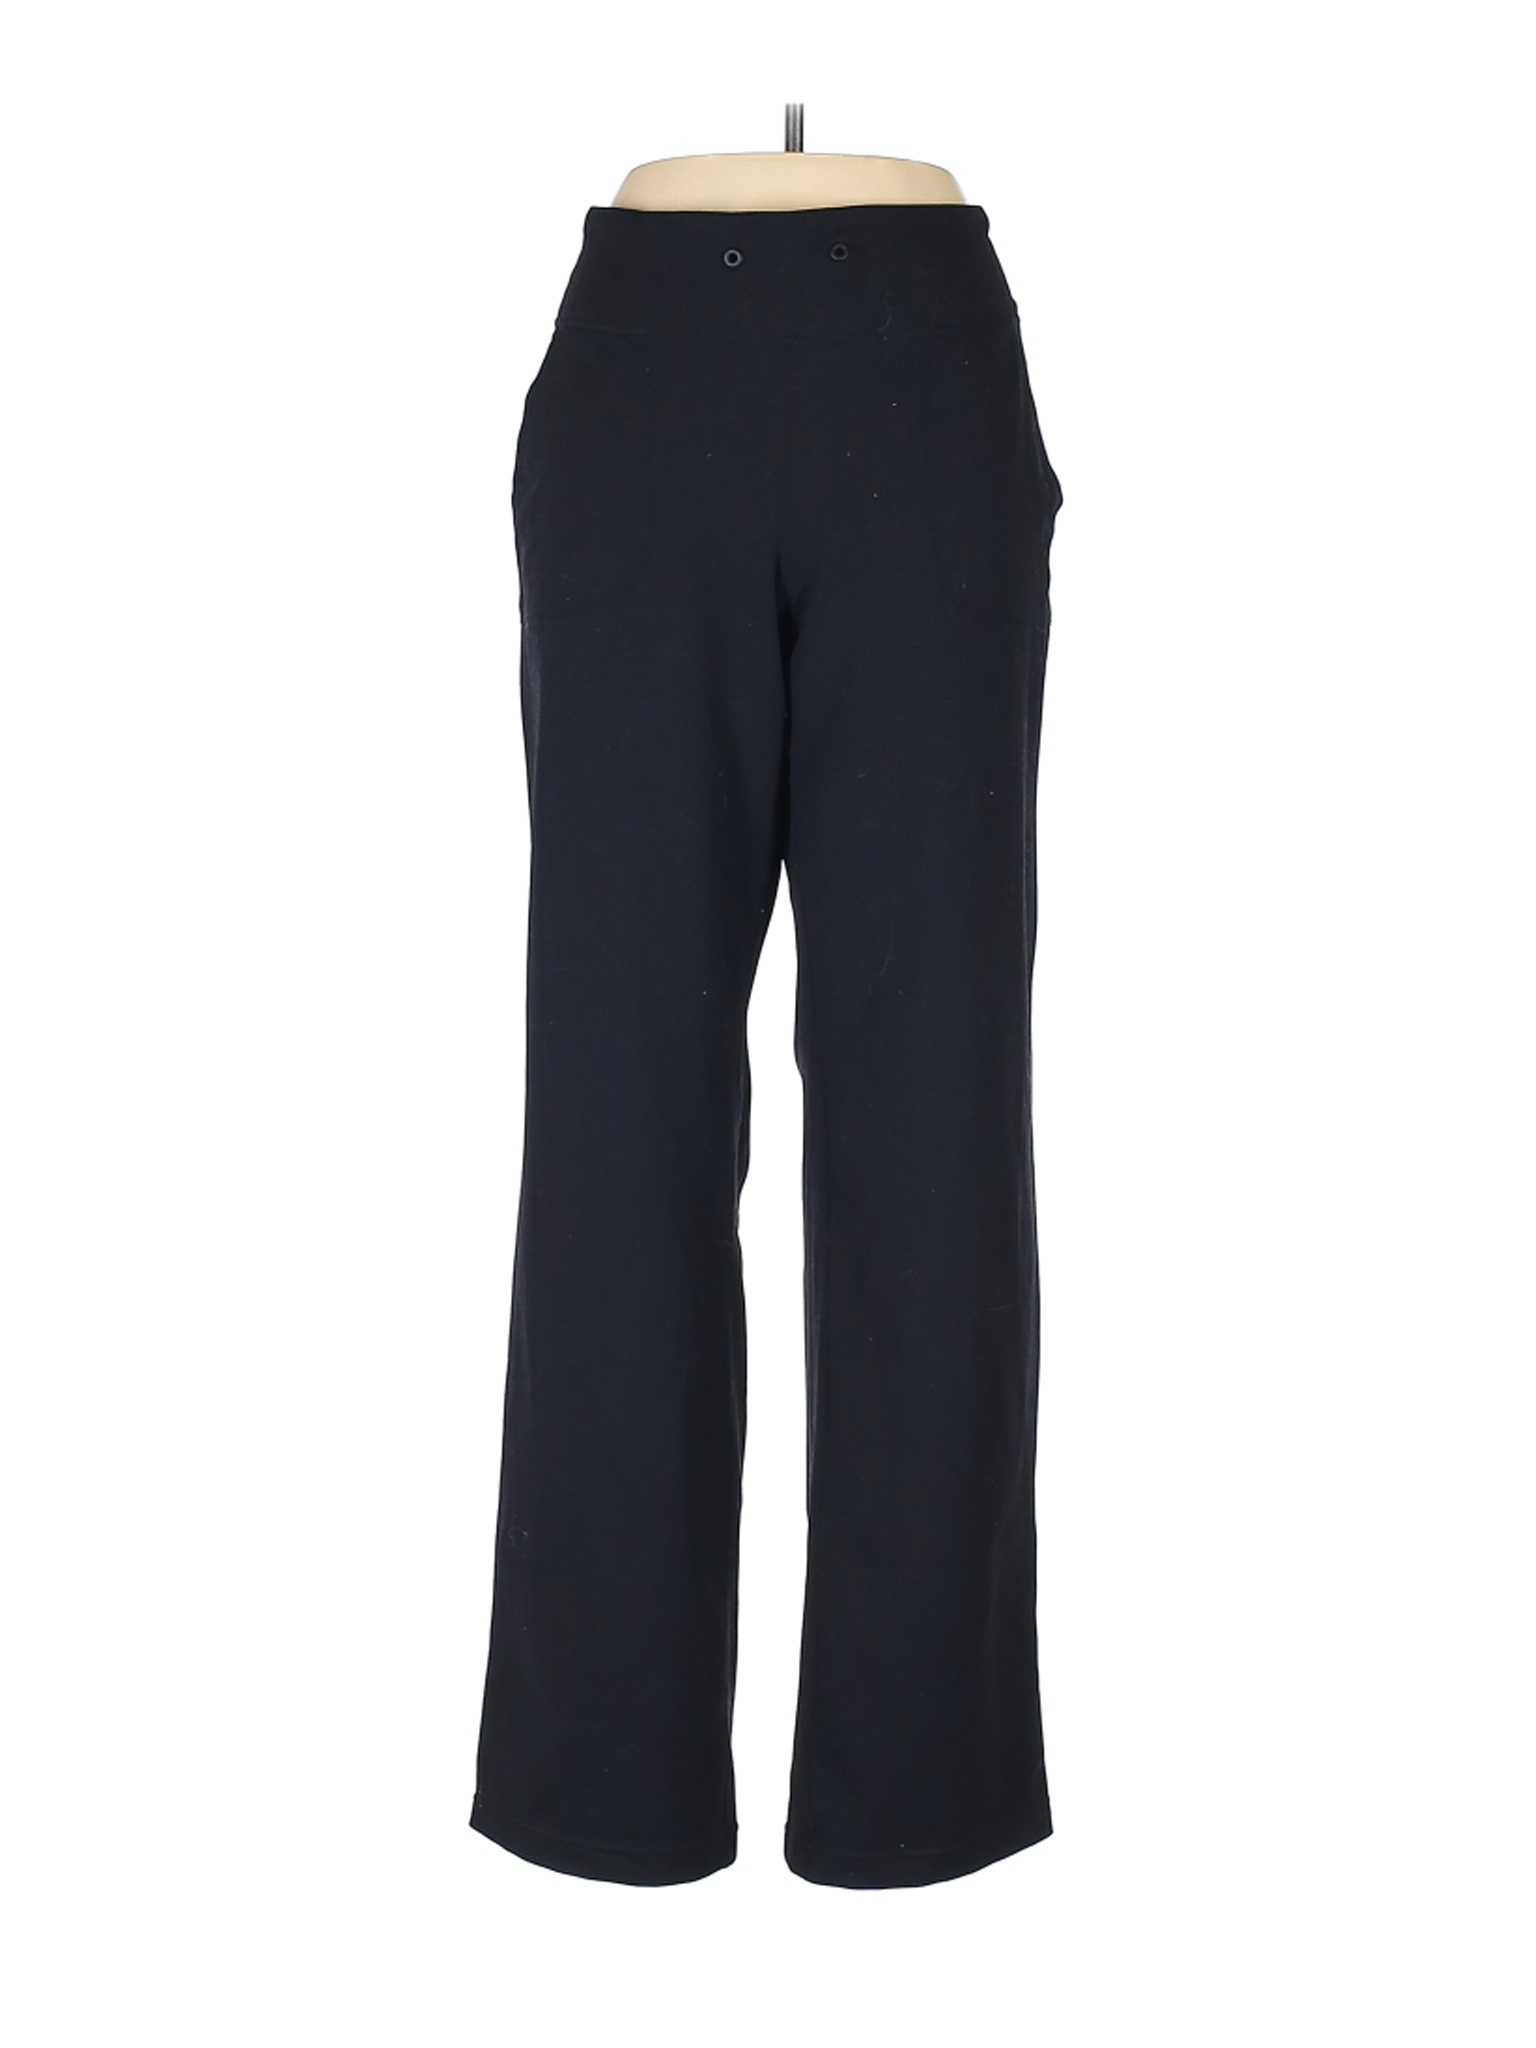 Zella Women Black Active Pants 10 | eBay